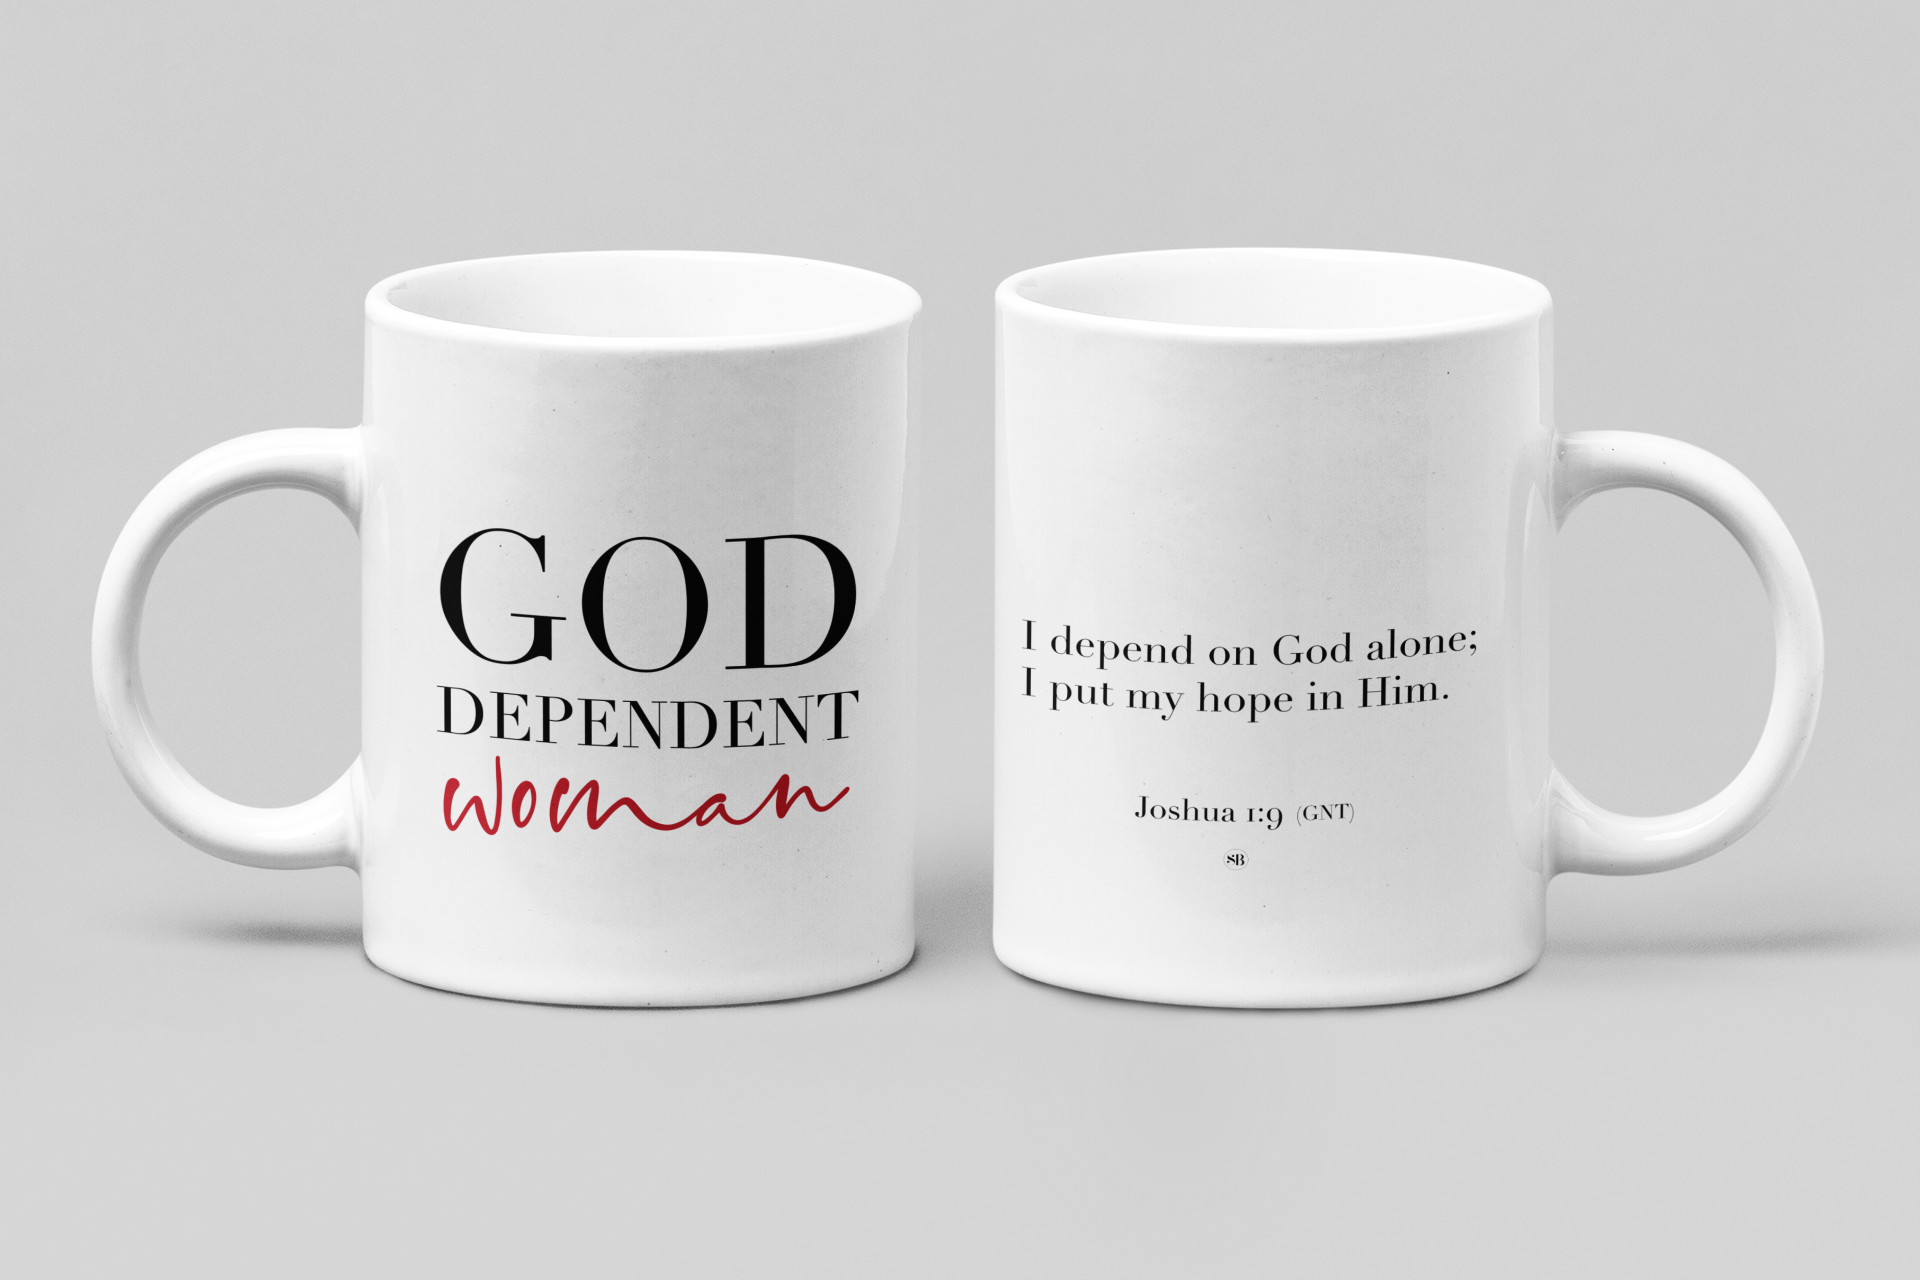 God dependent woman. Christian mug, bible mug